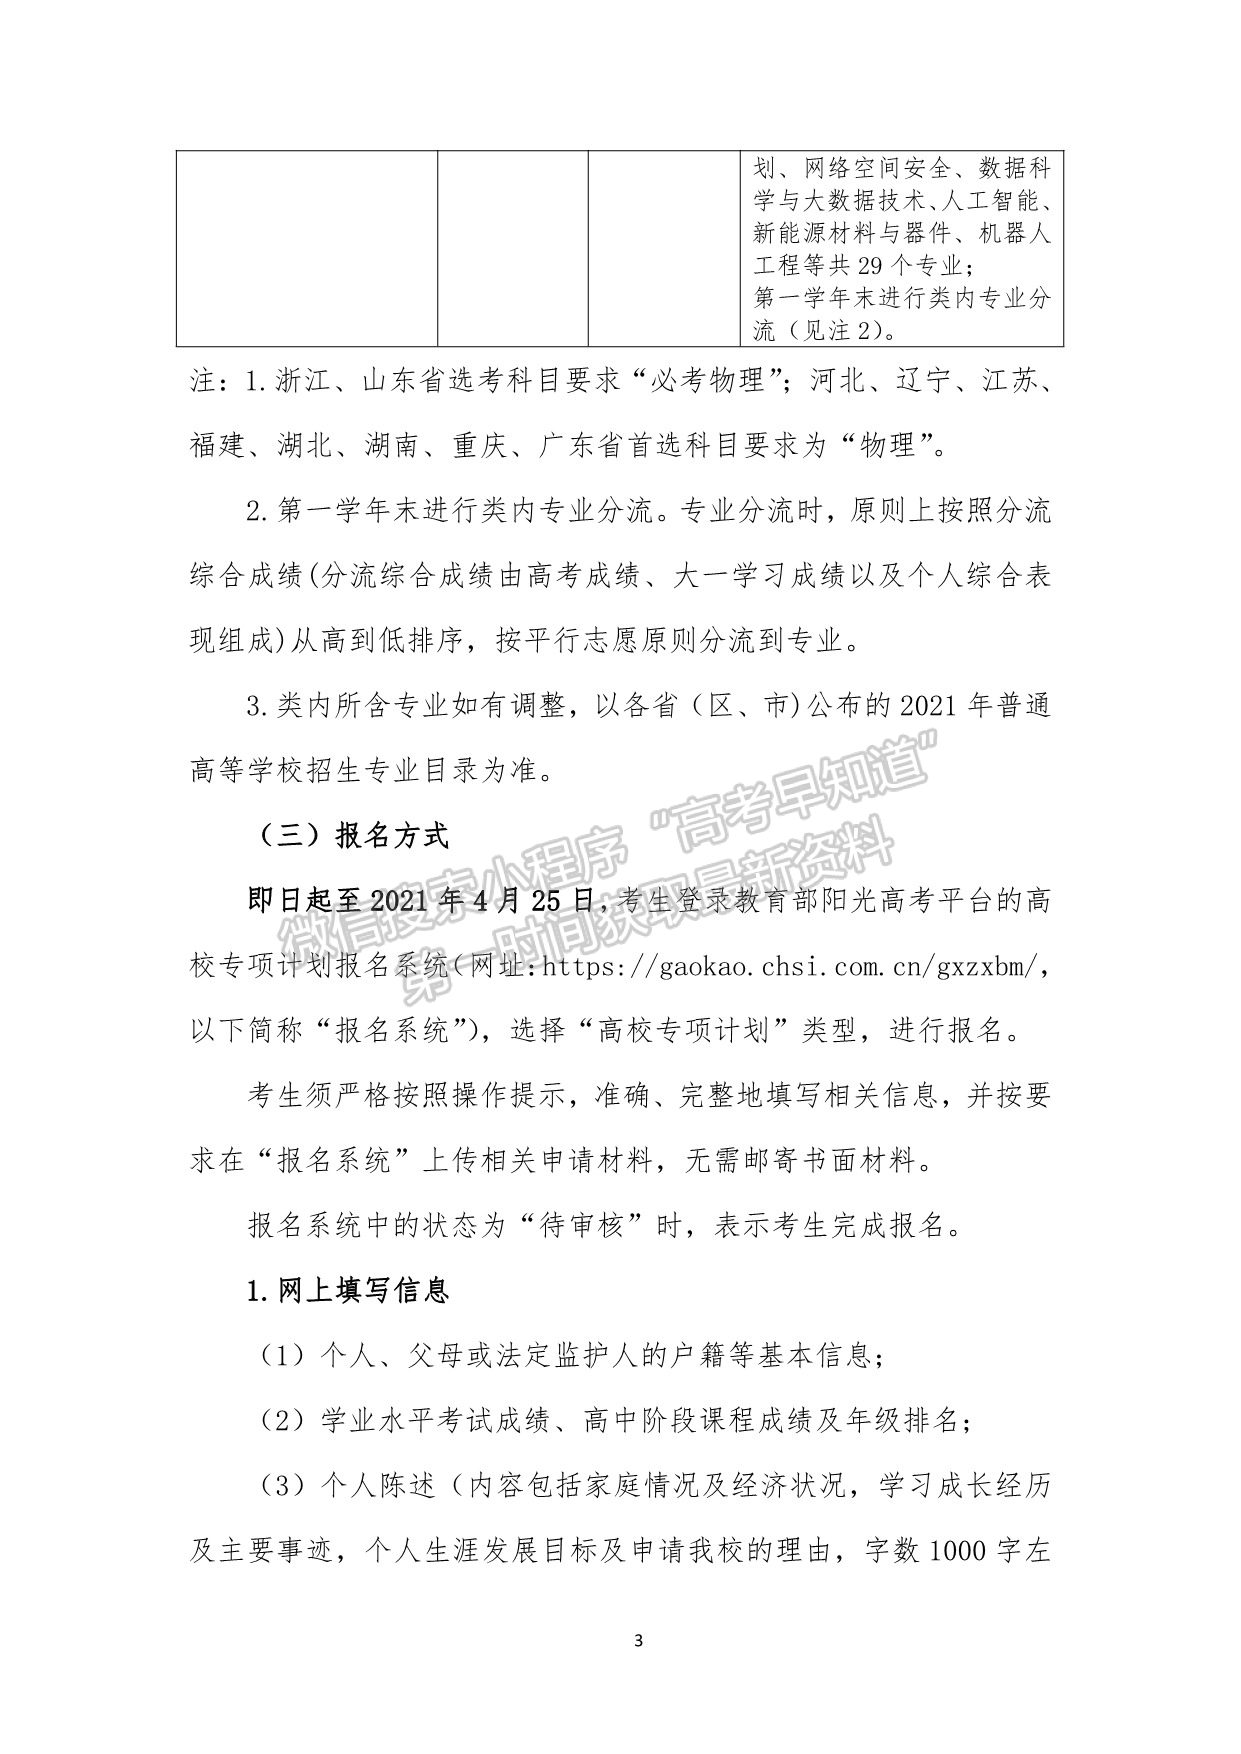 上海大学2021年高校专项计划暨“启航计划”招生简章